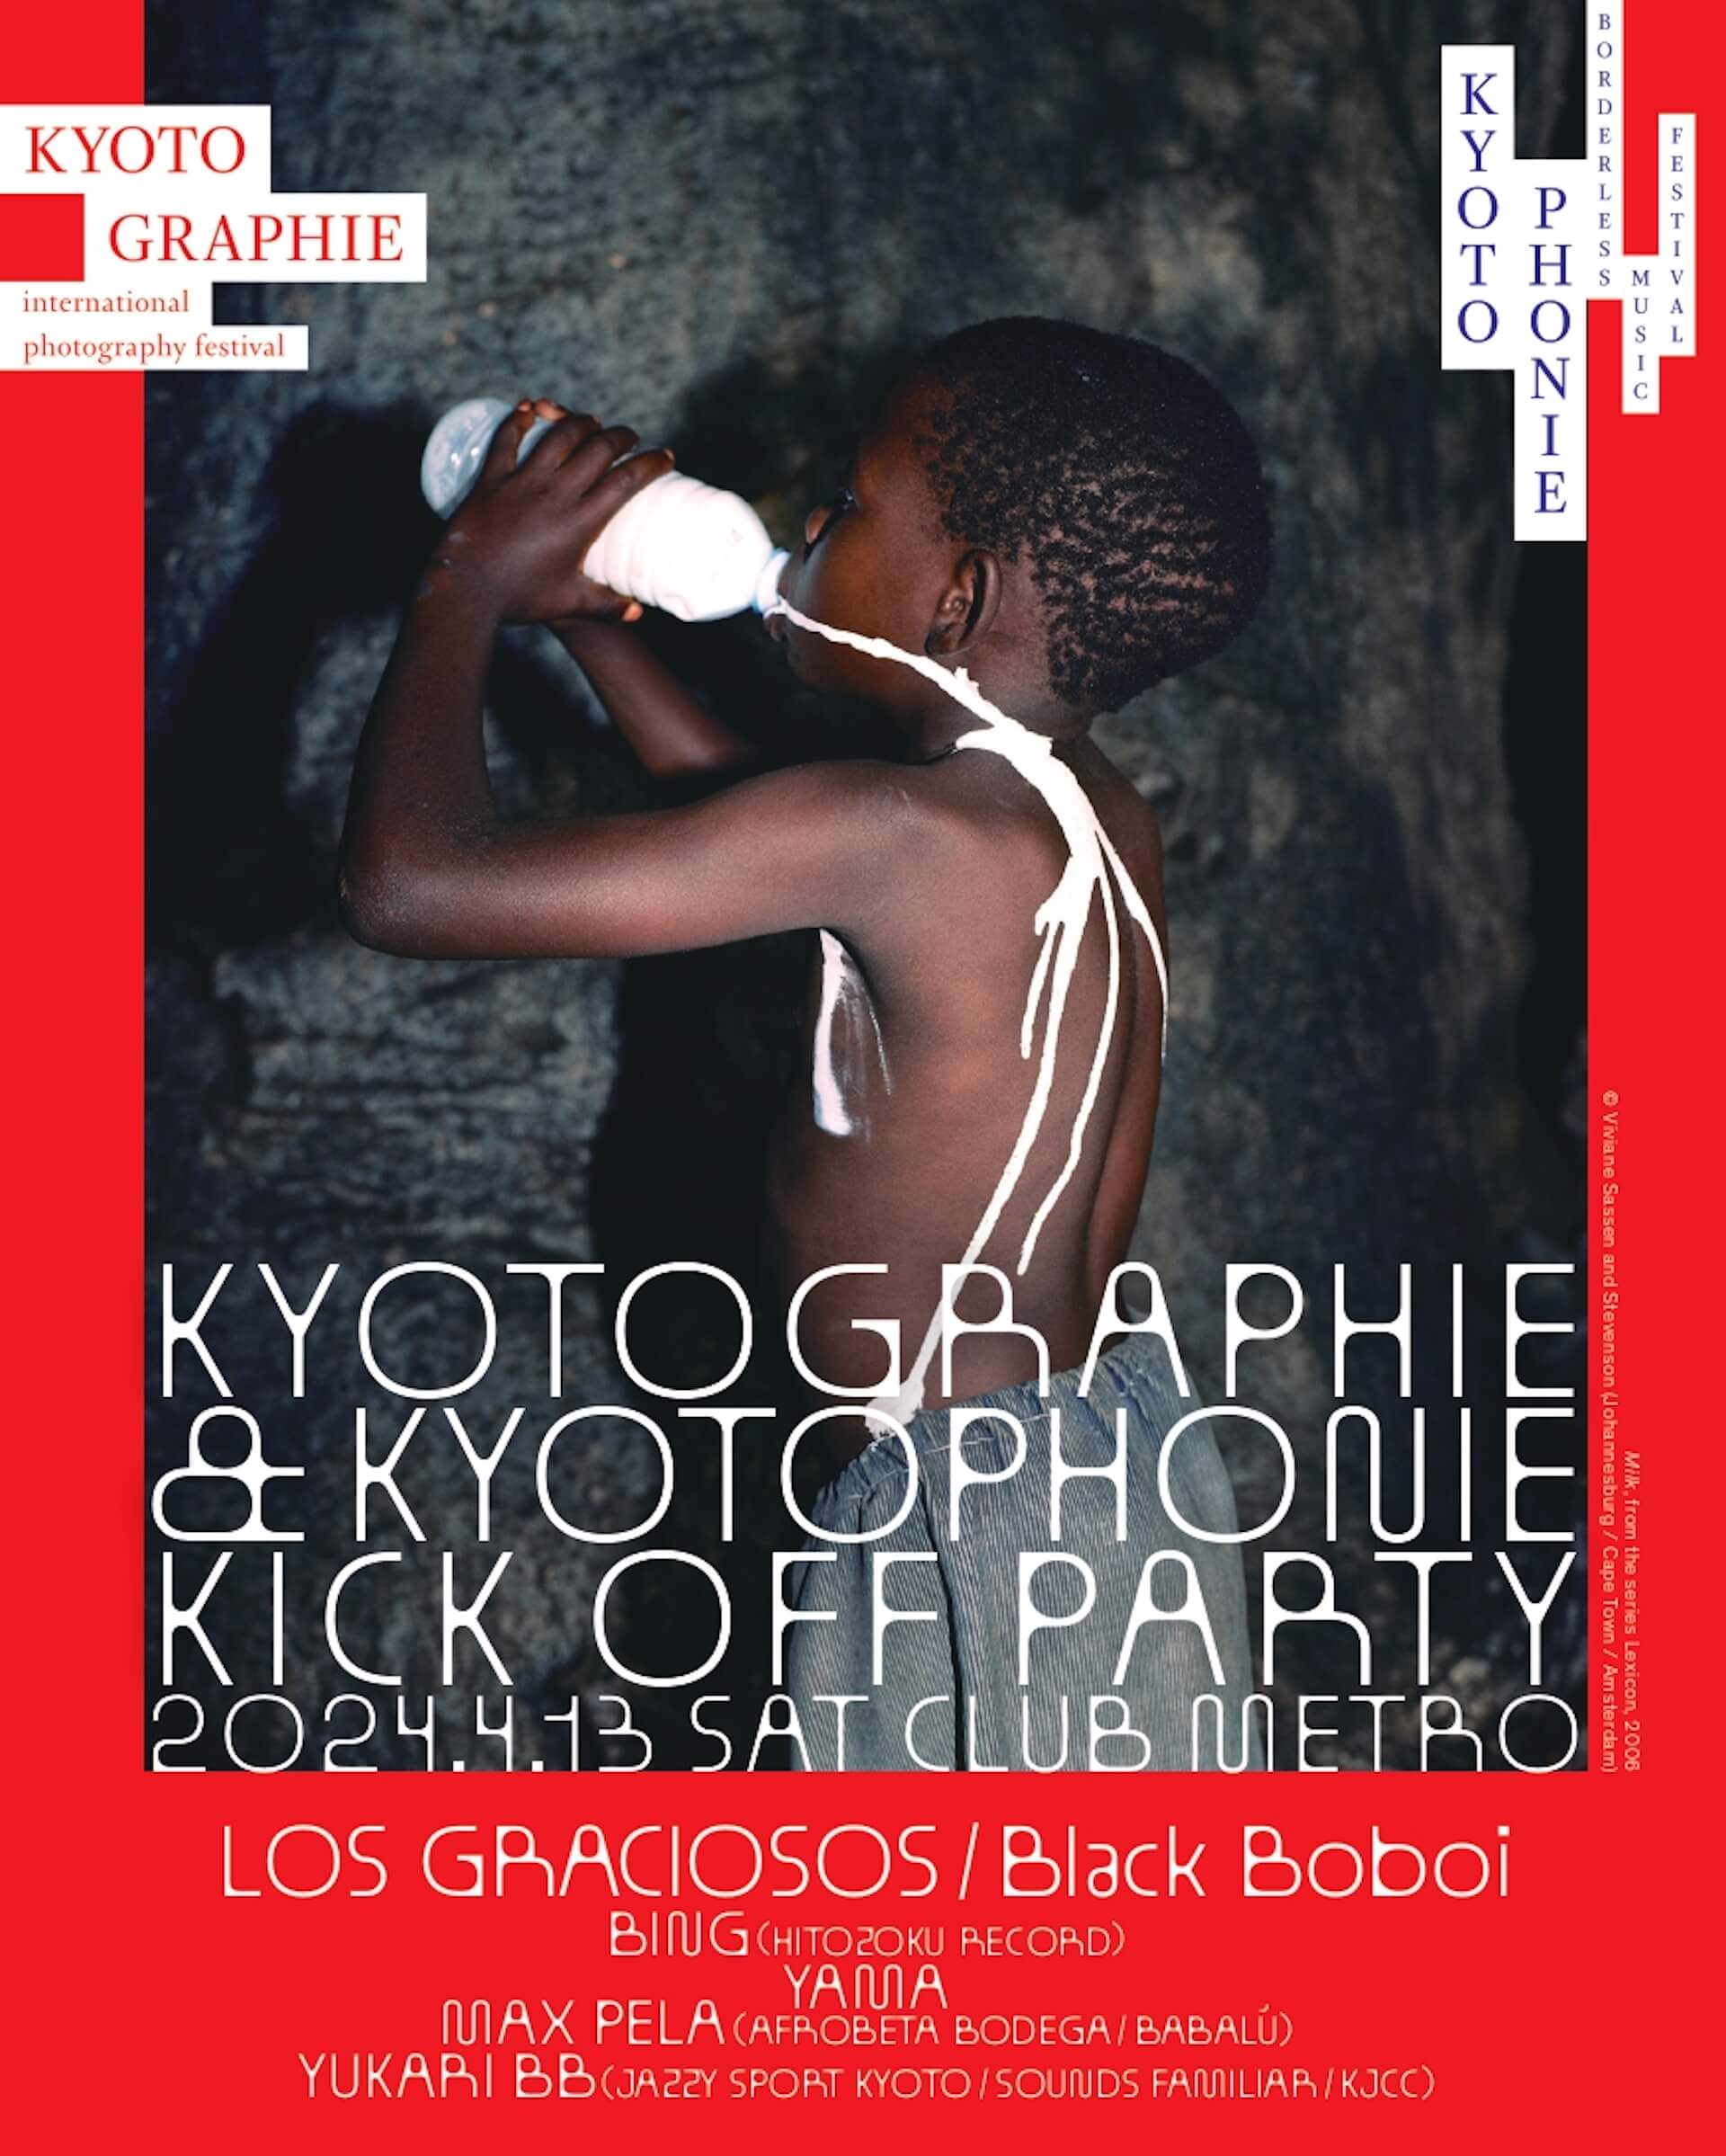 KYOTOGRAPHIE & KYOTOPHONIEのキックオフパーティーにLos Graciosos、Black Boboiらが出演｜翌日にはヤノマミ族のシャーマンであるDavi KopenawaのスピーチやXenia Françaによるライブも music240328-kyotophonie3